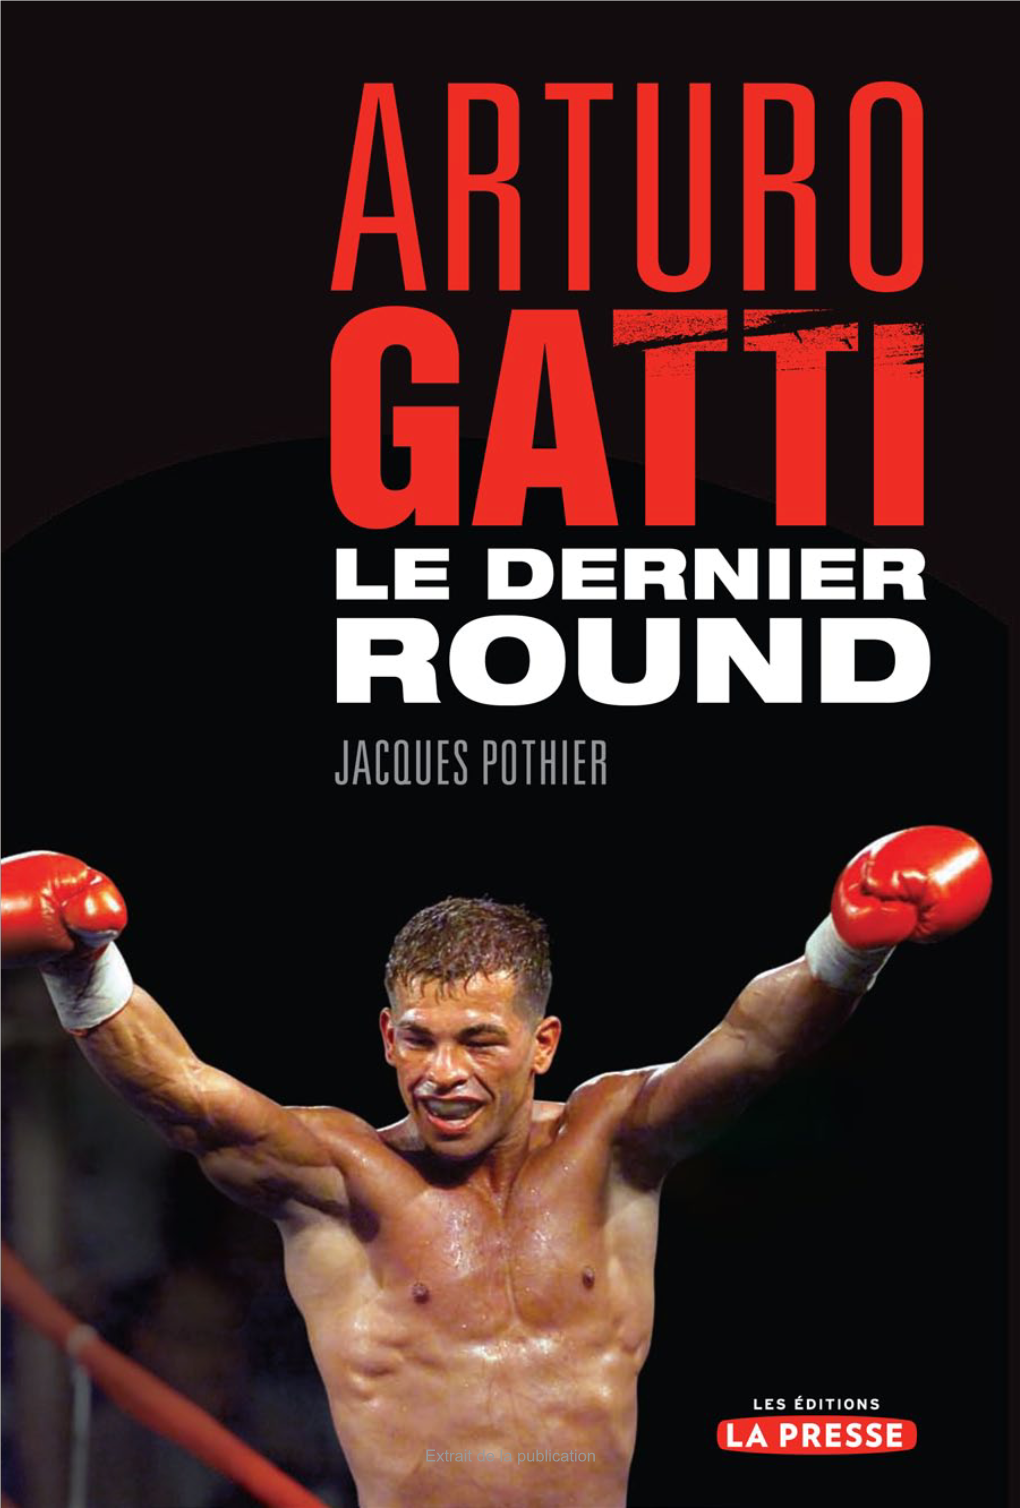 Arturo Gatti : Le Dernier Round ISBN 978-2-923681-66-5 1